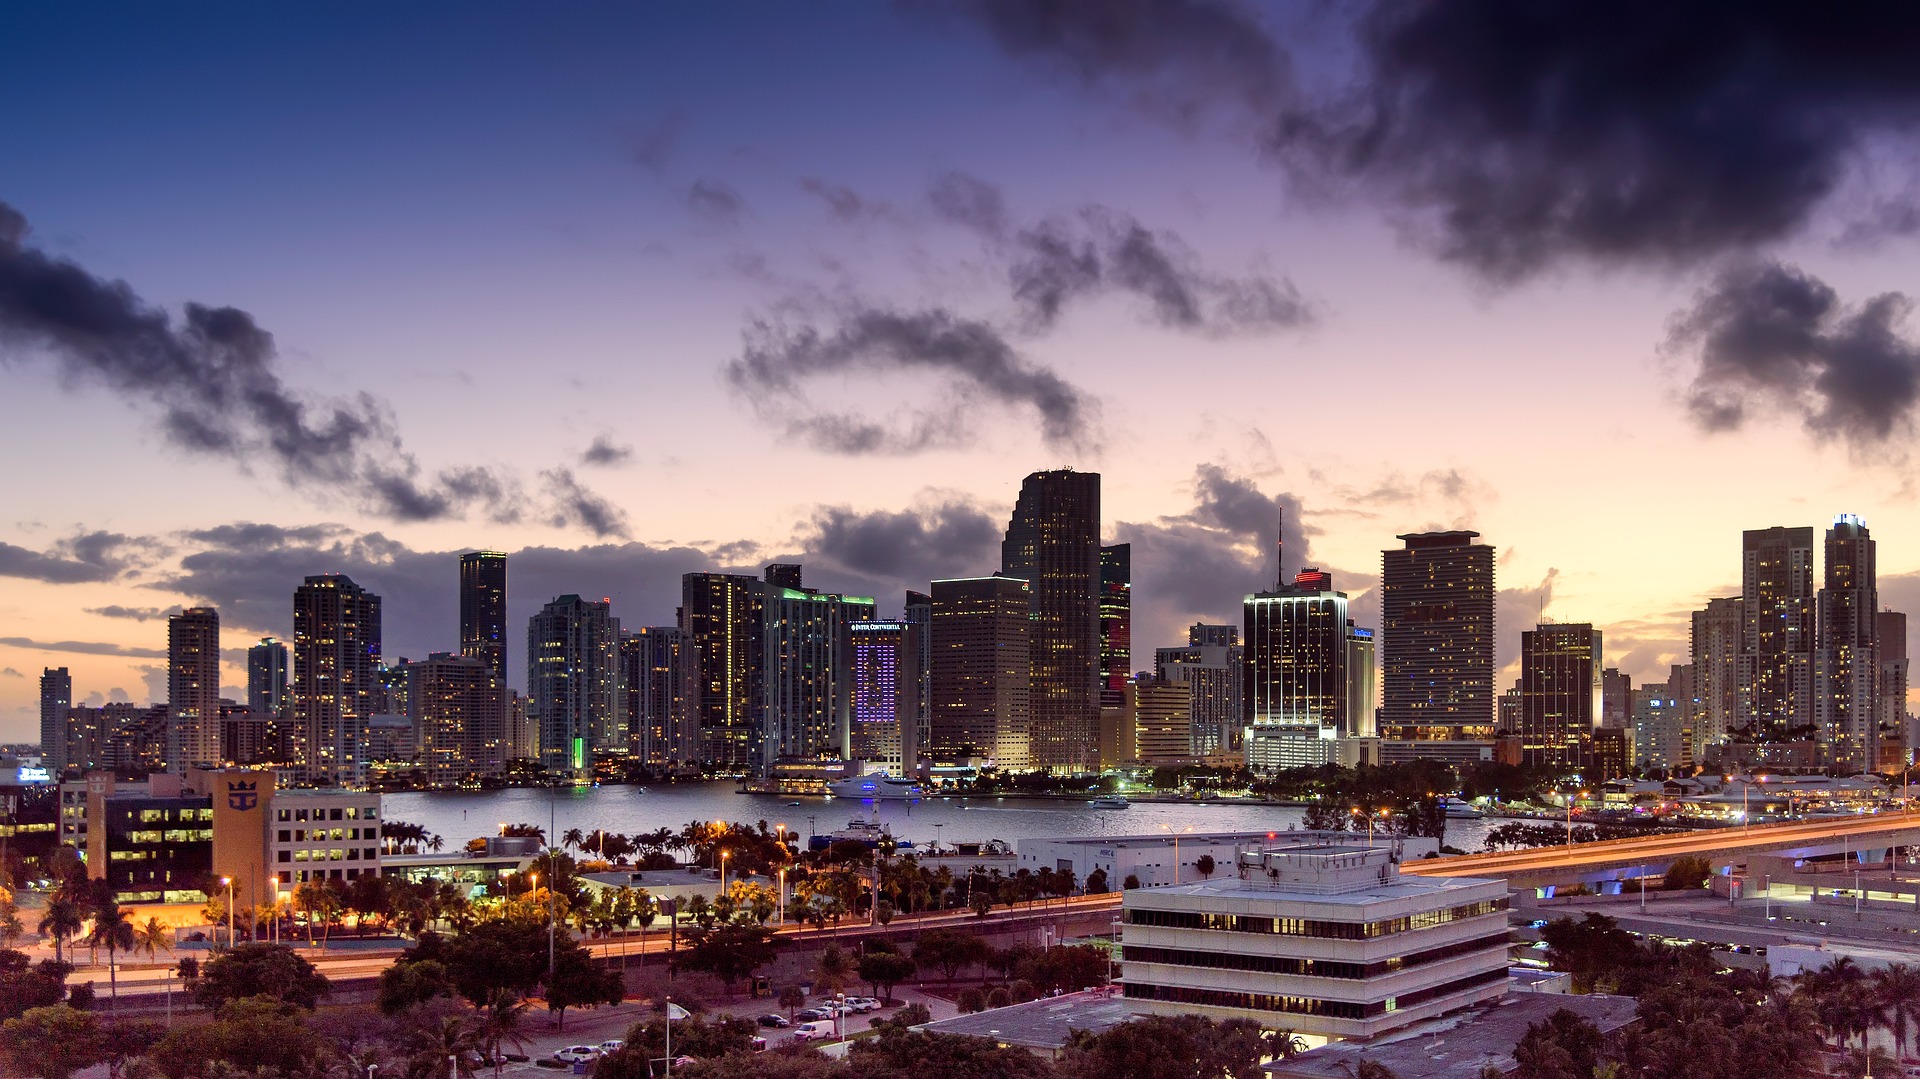 Miami skyline at night - Photo Credit: MustangJoe via Pixabay